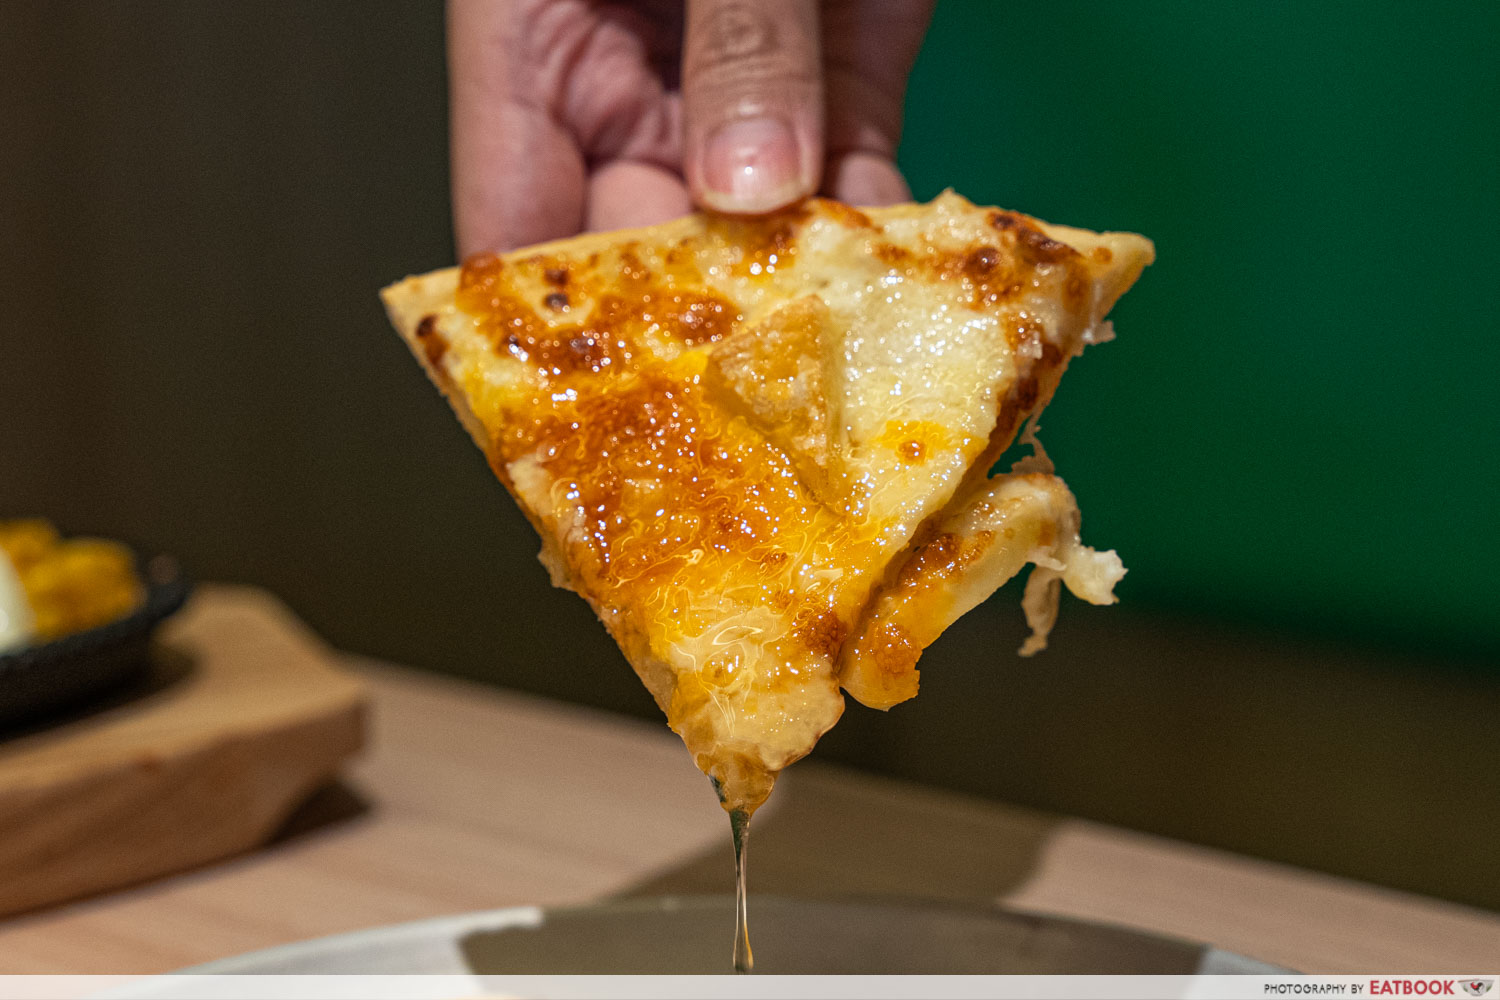 quattro-cheese-pizza-slice-closeup